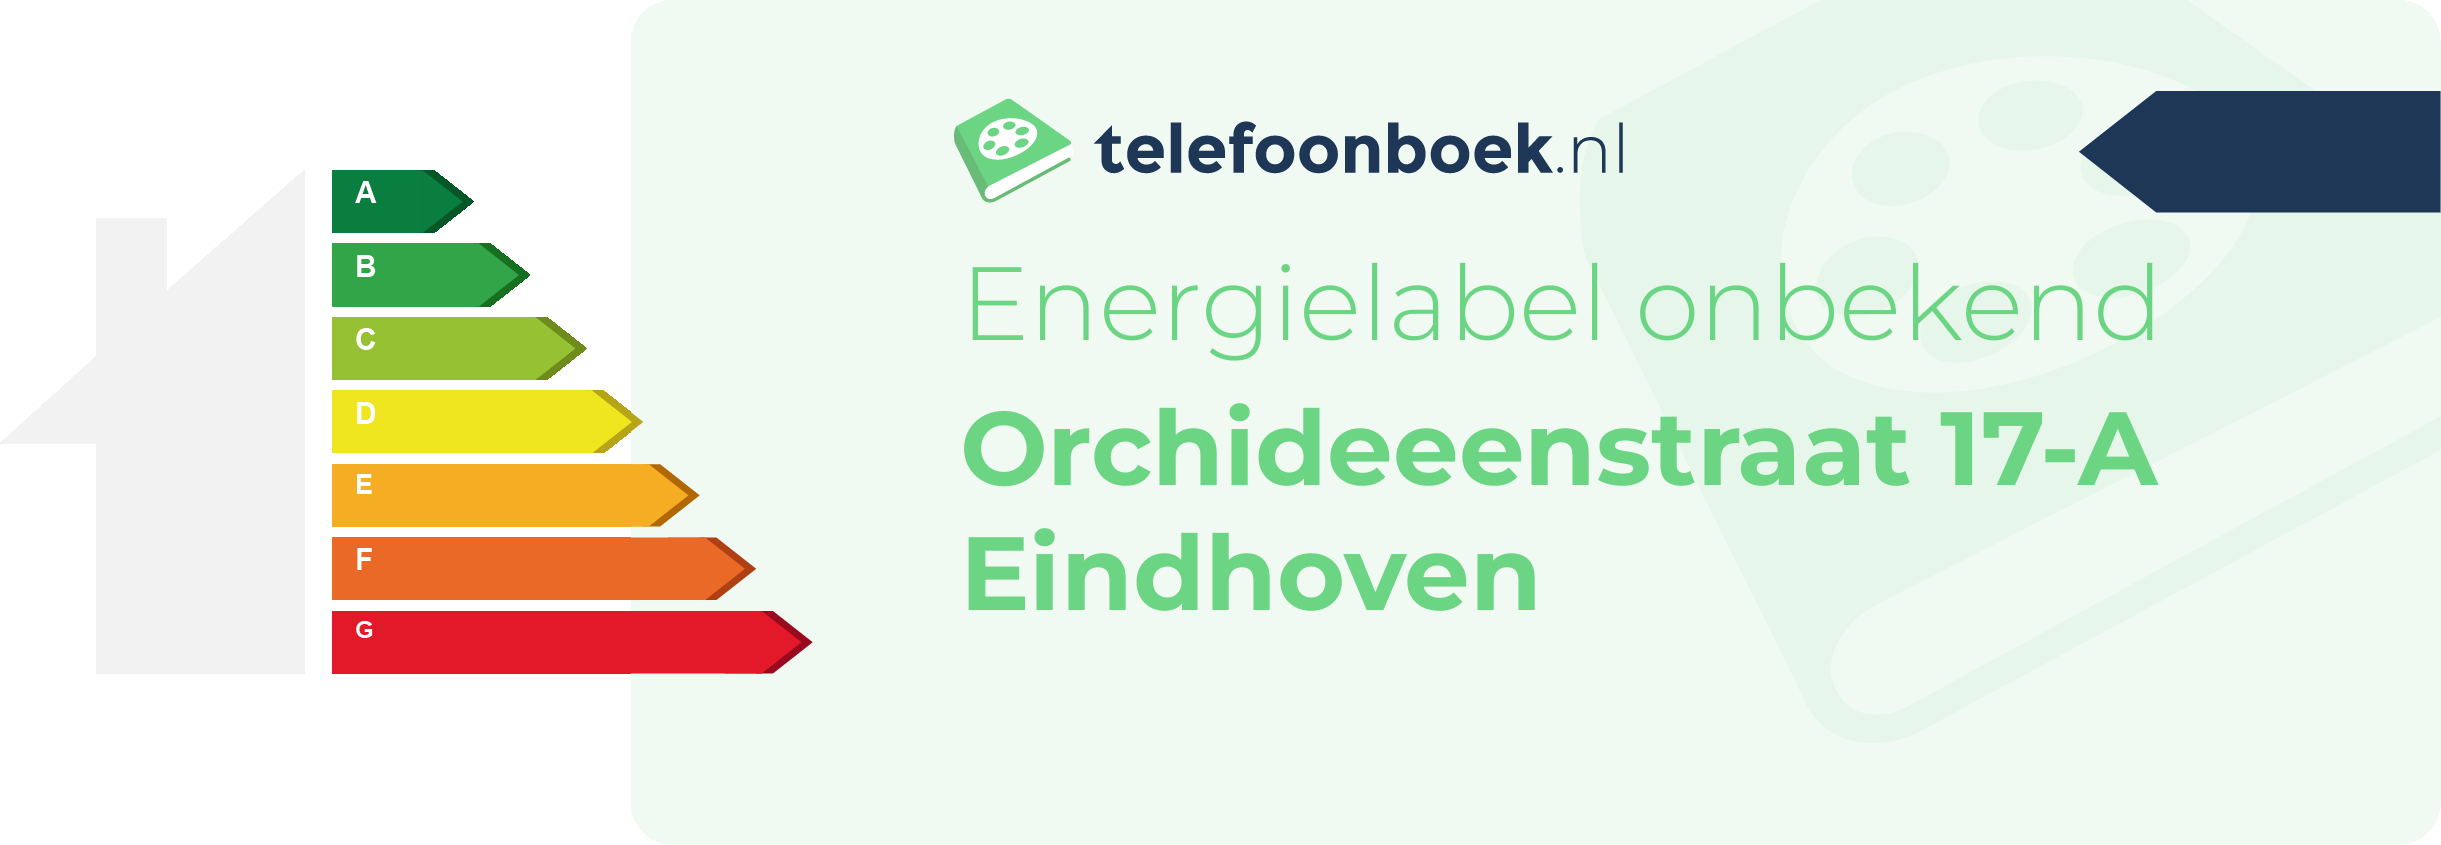 Energielabel Orchideeenstraat 17-A Eindhoven